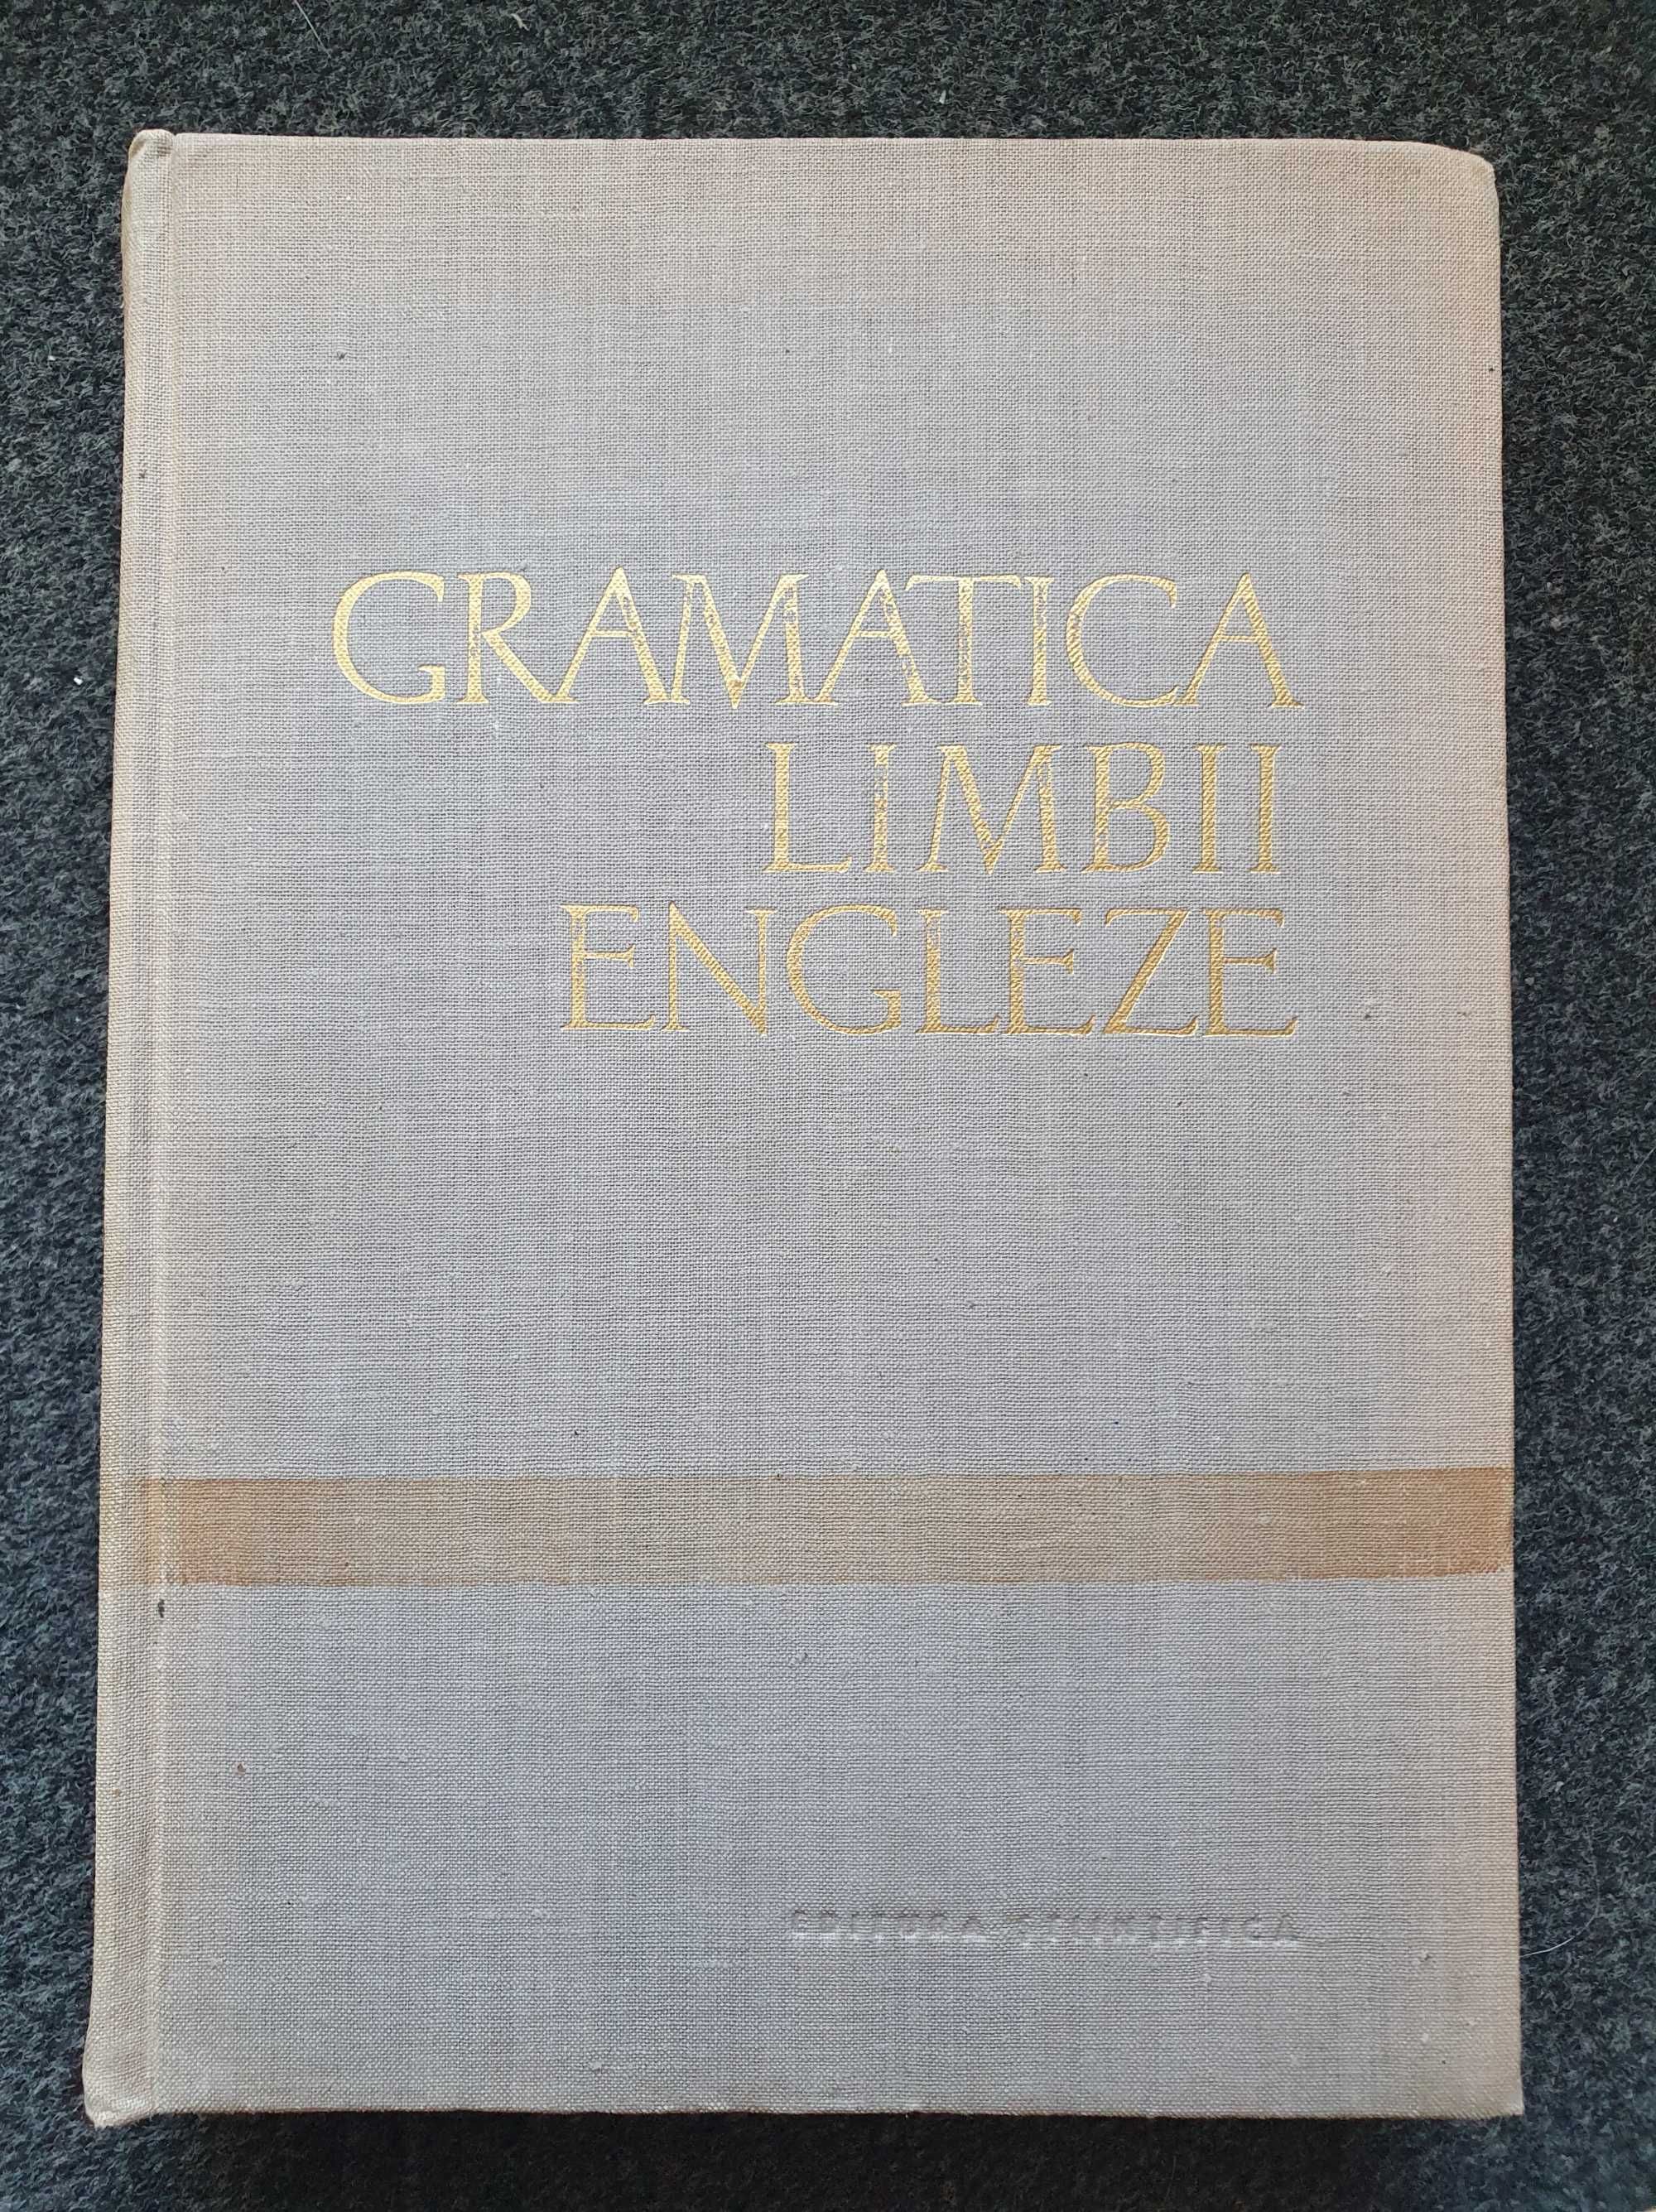 GRAMATICA LIMBII ENGLEZE - Alice Badescu (ed. Stiintifica)